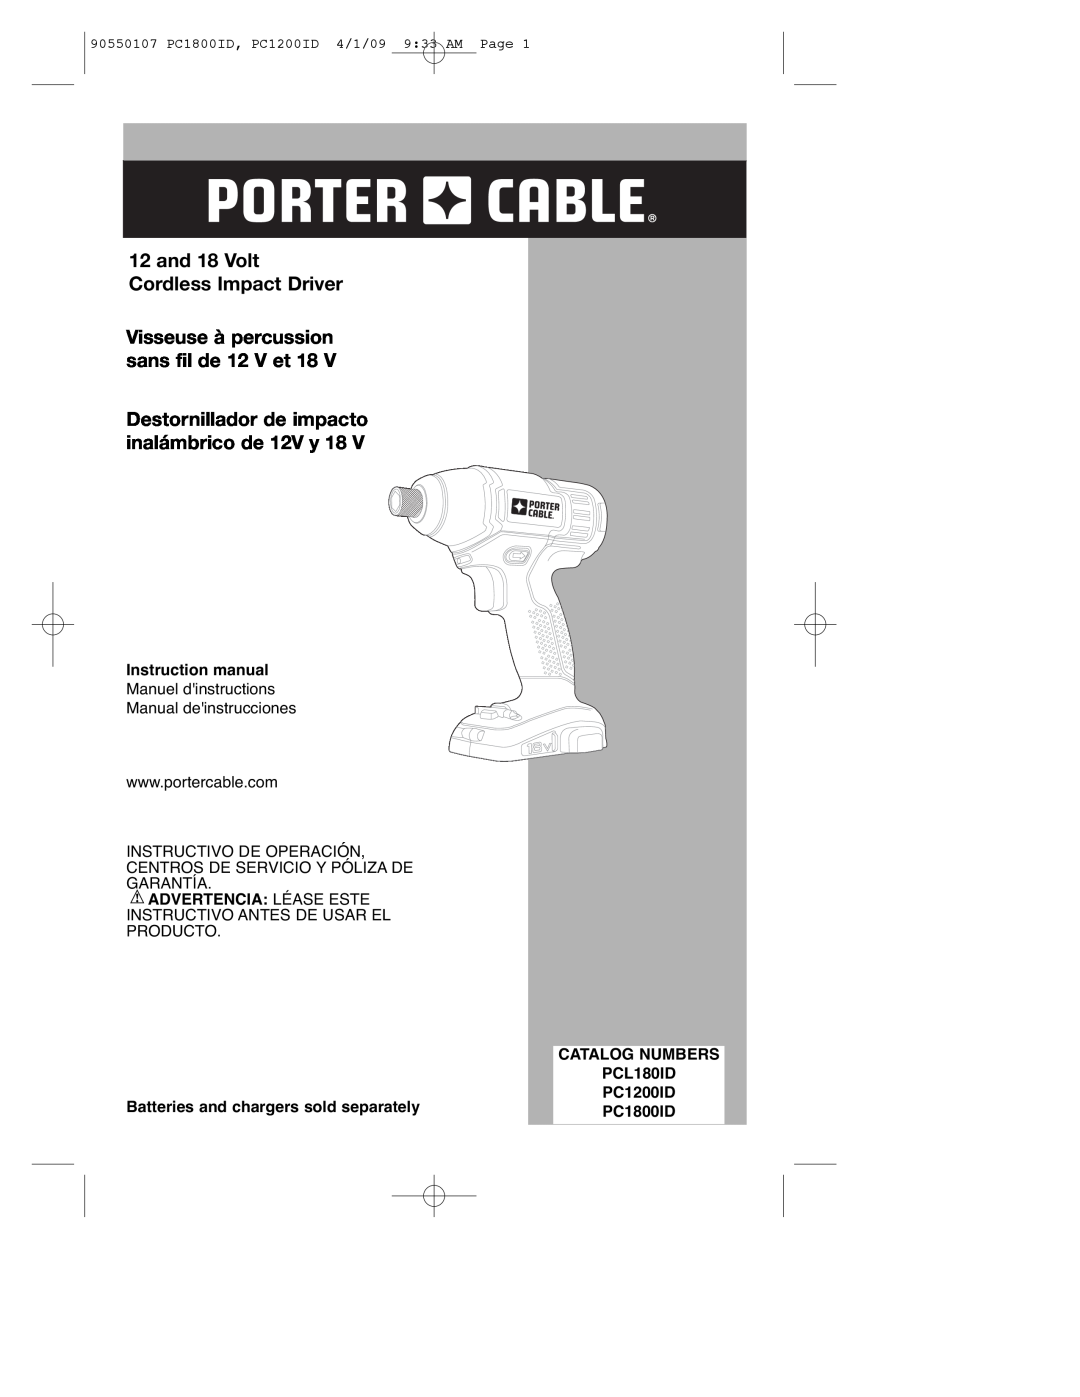 Porter-Cable PC1800ID instruction manual and 18 Volt Cordless Impact Driver, Visseuse à percussion sans fil de 12 V et 18 